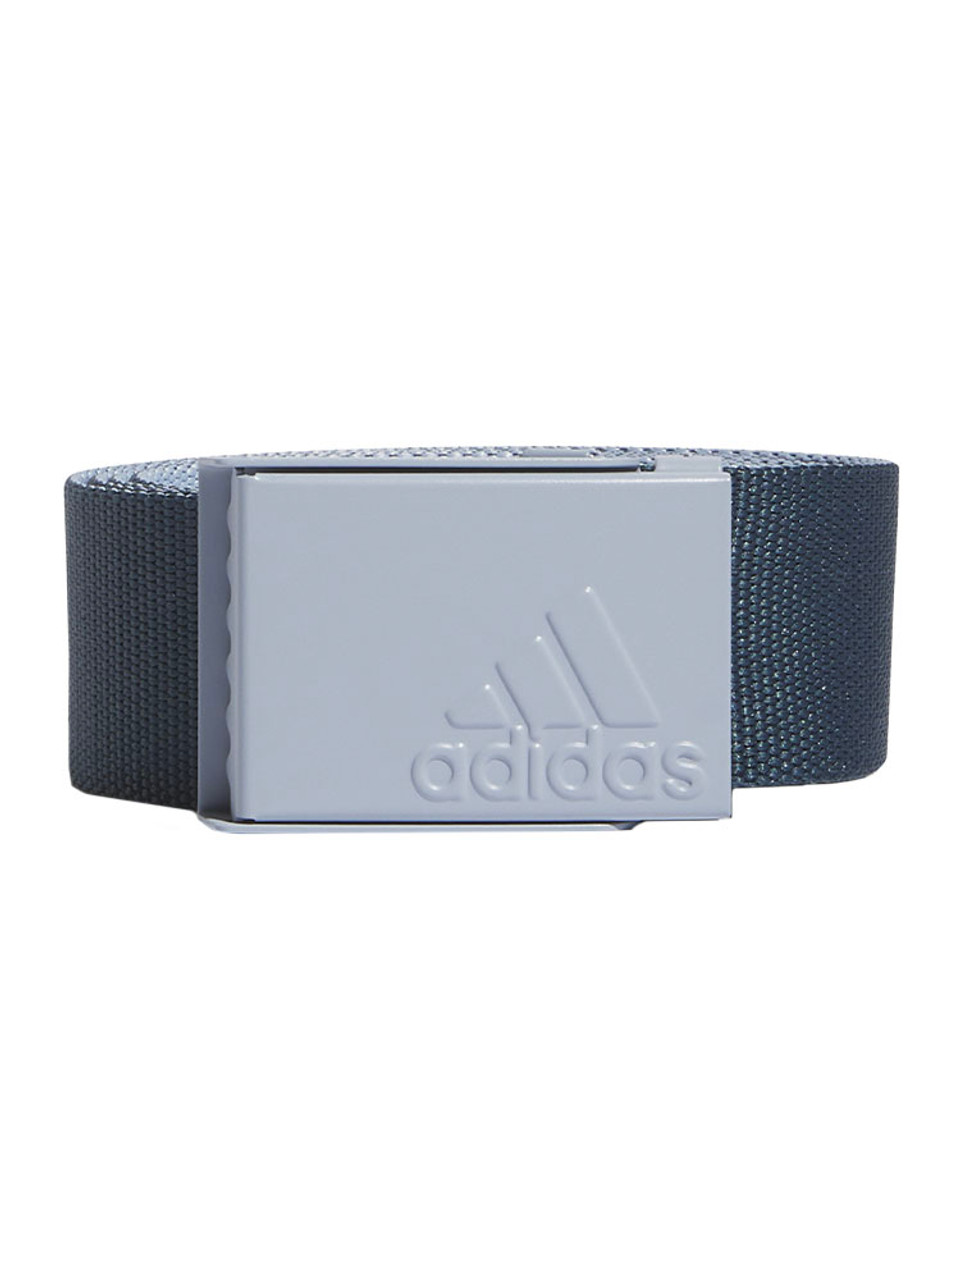 adidas Braided Stretch Belt - Grey, Men's Golf, adidas US